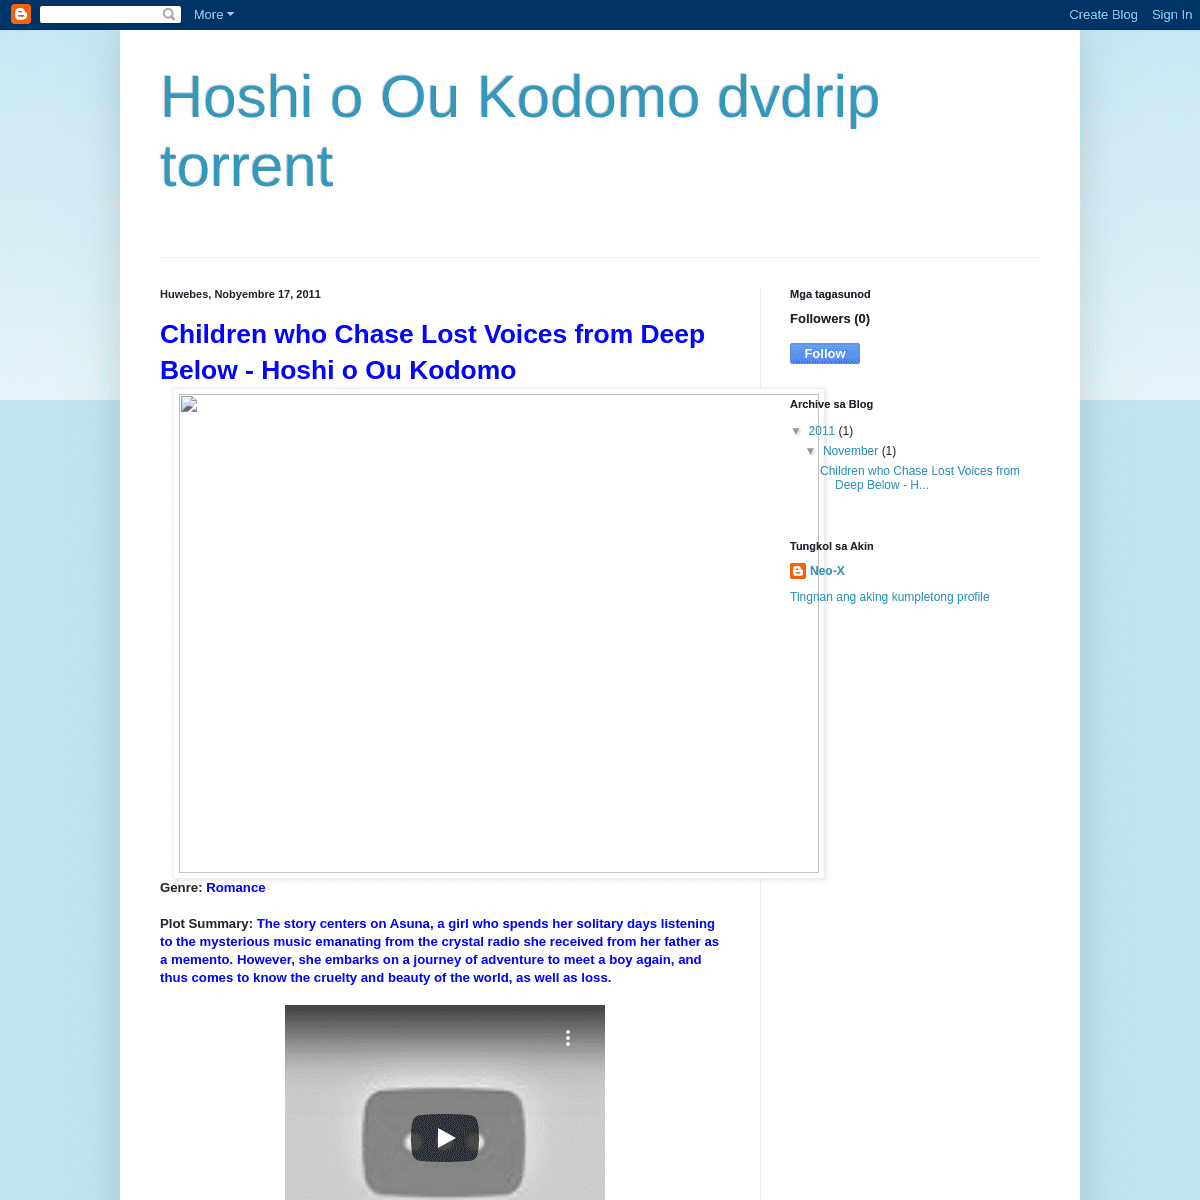 A complete backup of hoshi-o-ou-kodomo.blogspot.com